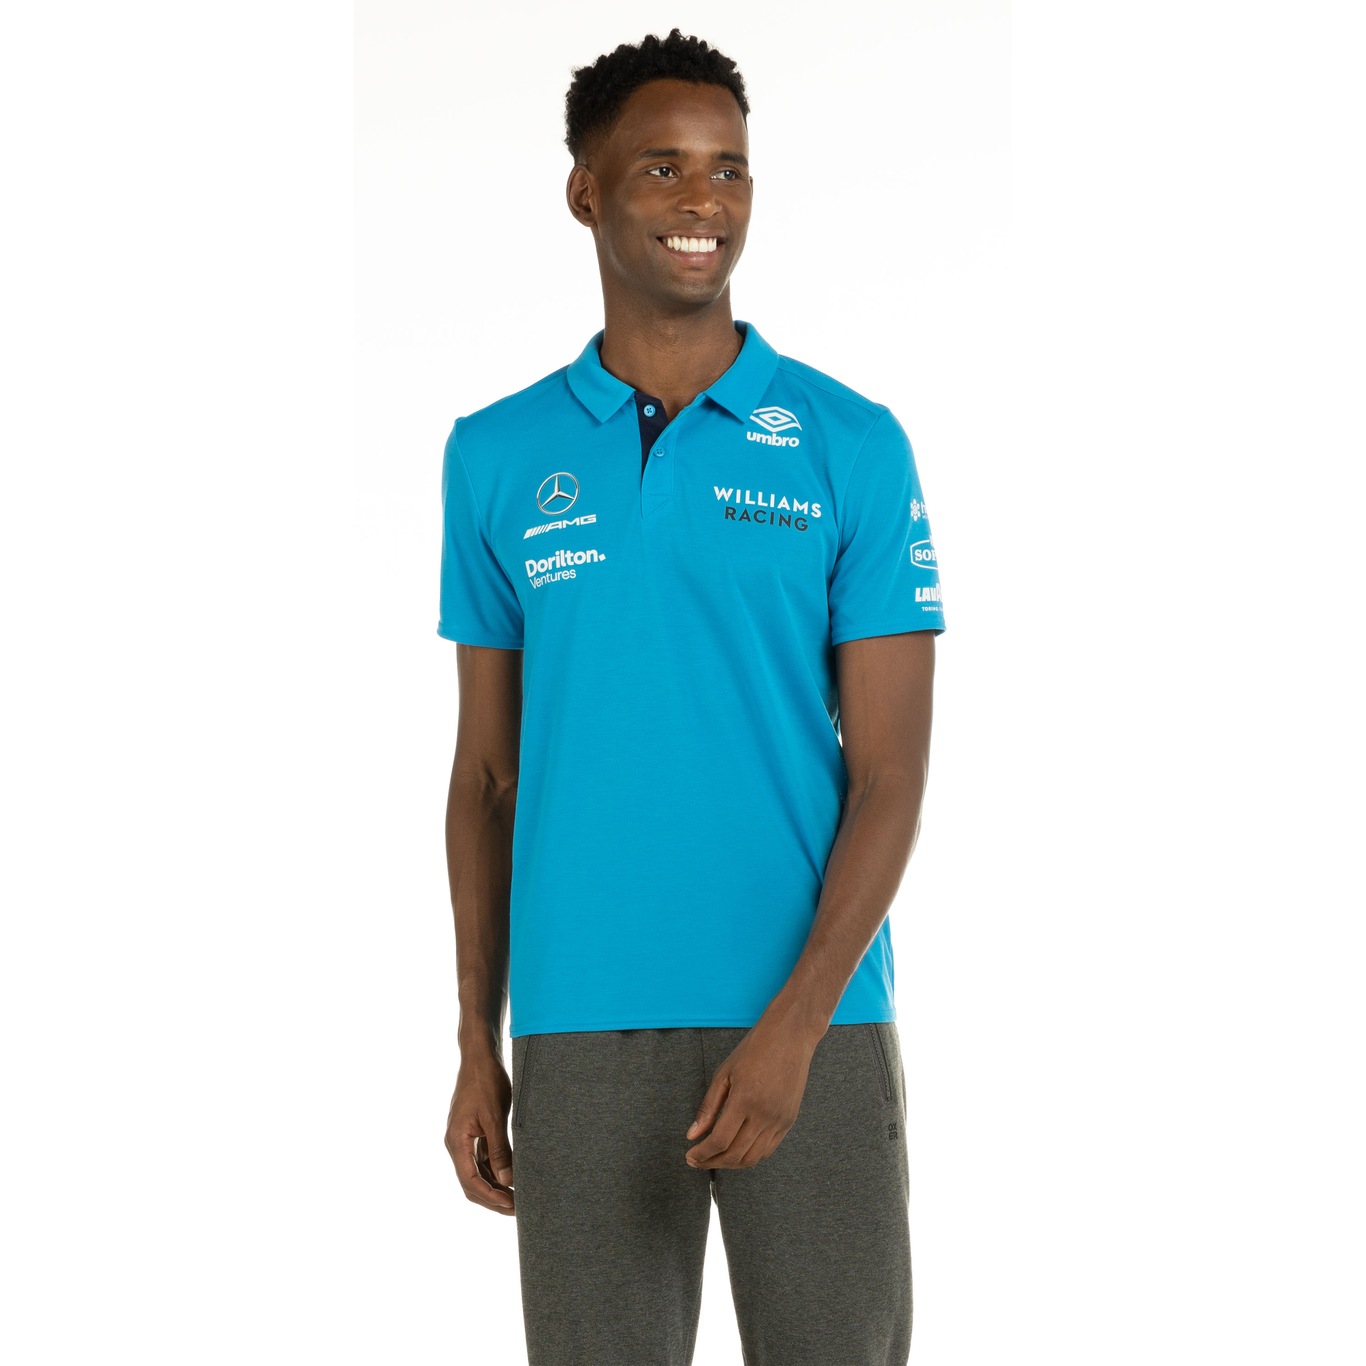 Camisa Polo Umbro Williams Racing - Masculina - Foto 3